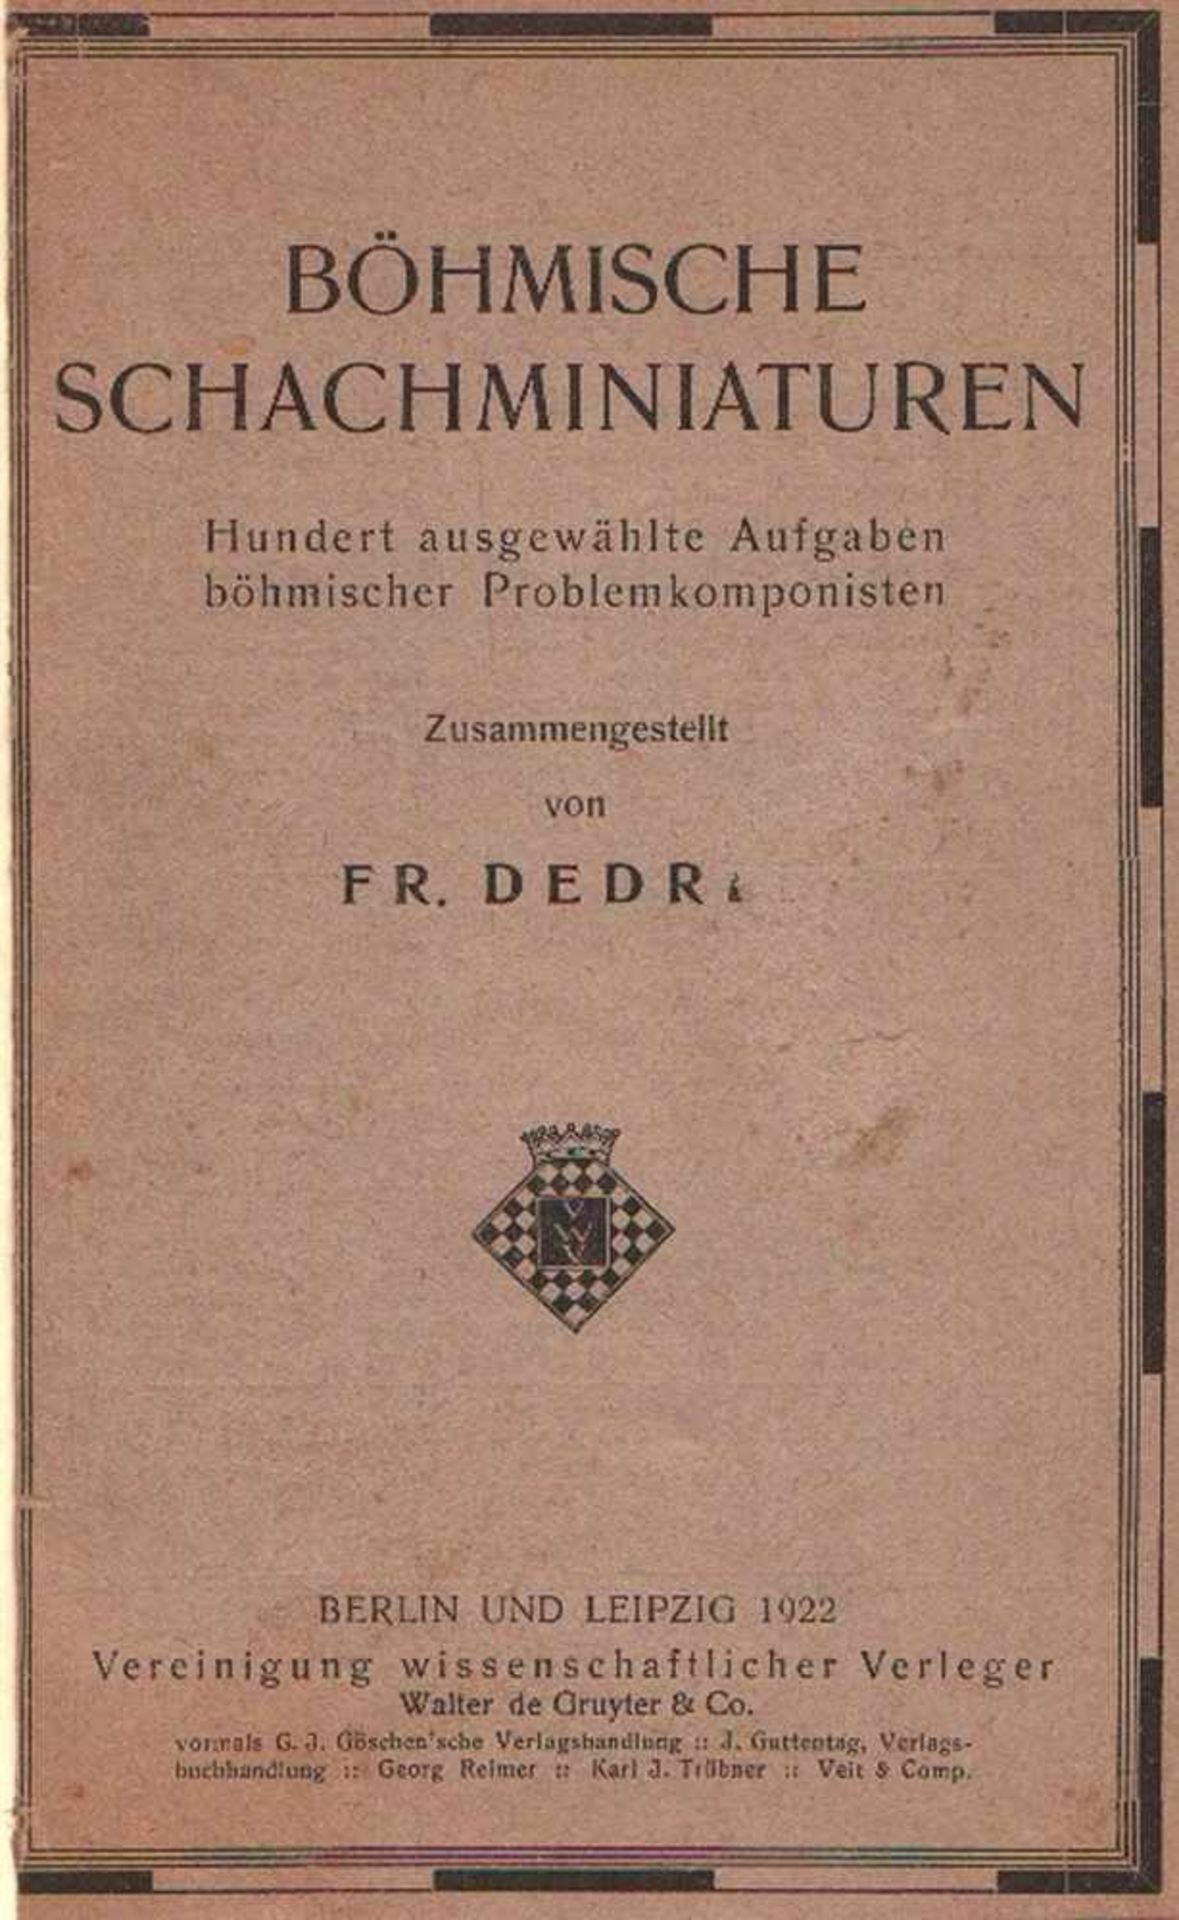 Dedrle, Fr(antisek). Böhmische Schachminiaturen. Hundert ausgewählte Aufgaben böhmischer